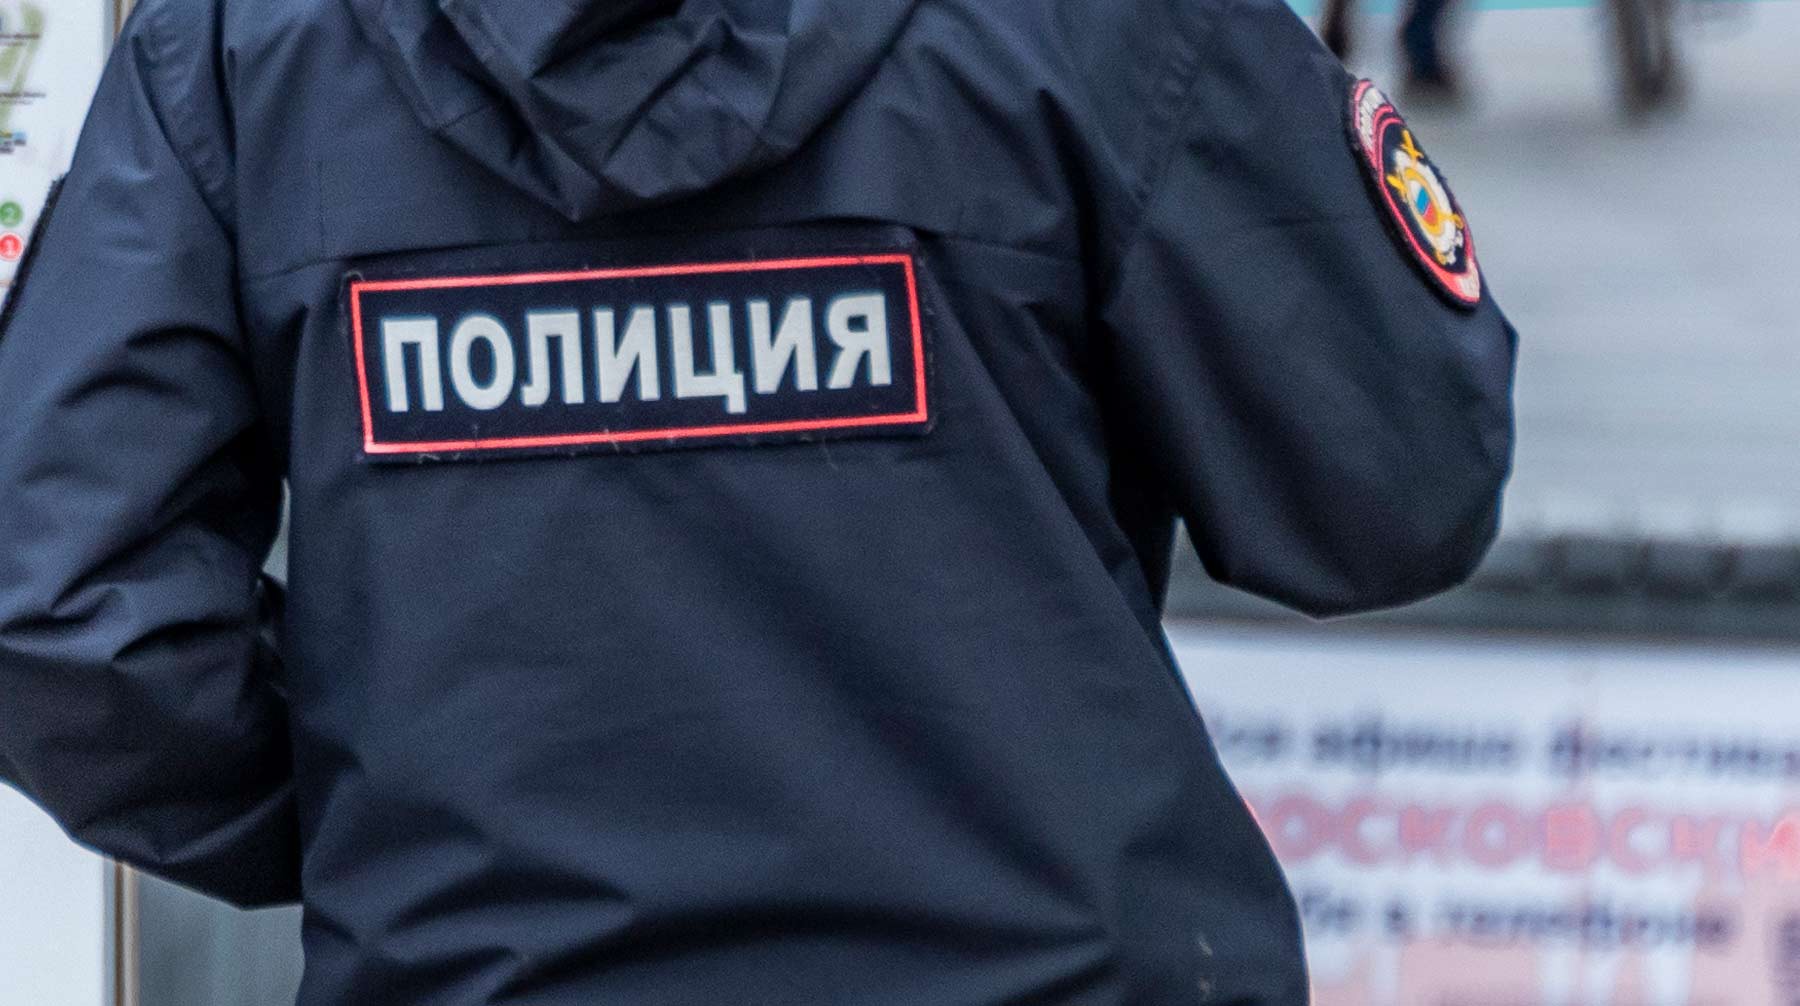 Dailystorm - Был не в форме: у станции «Бауманская» в Москве избили полицейского